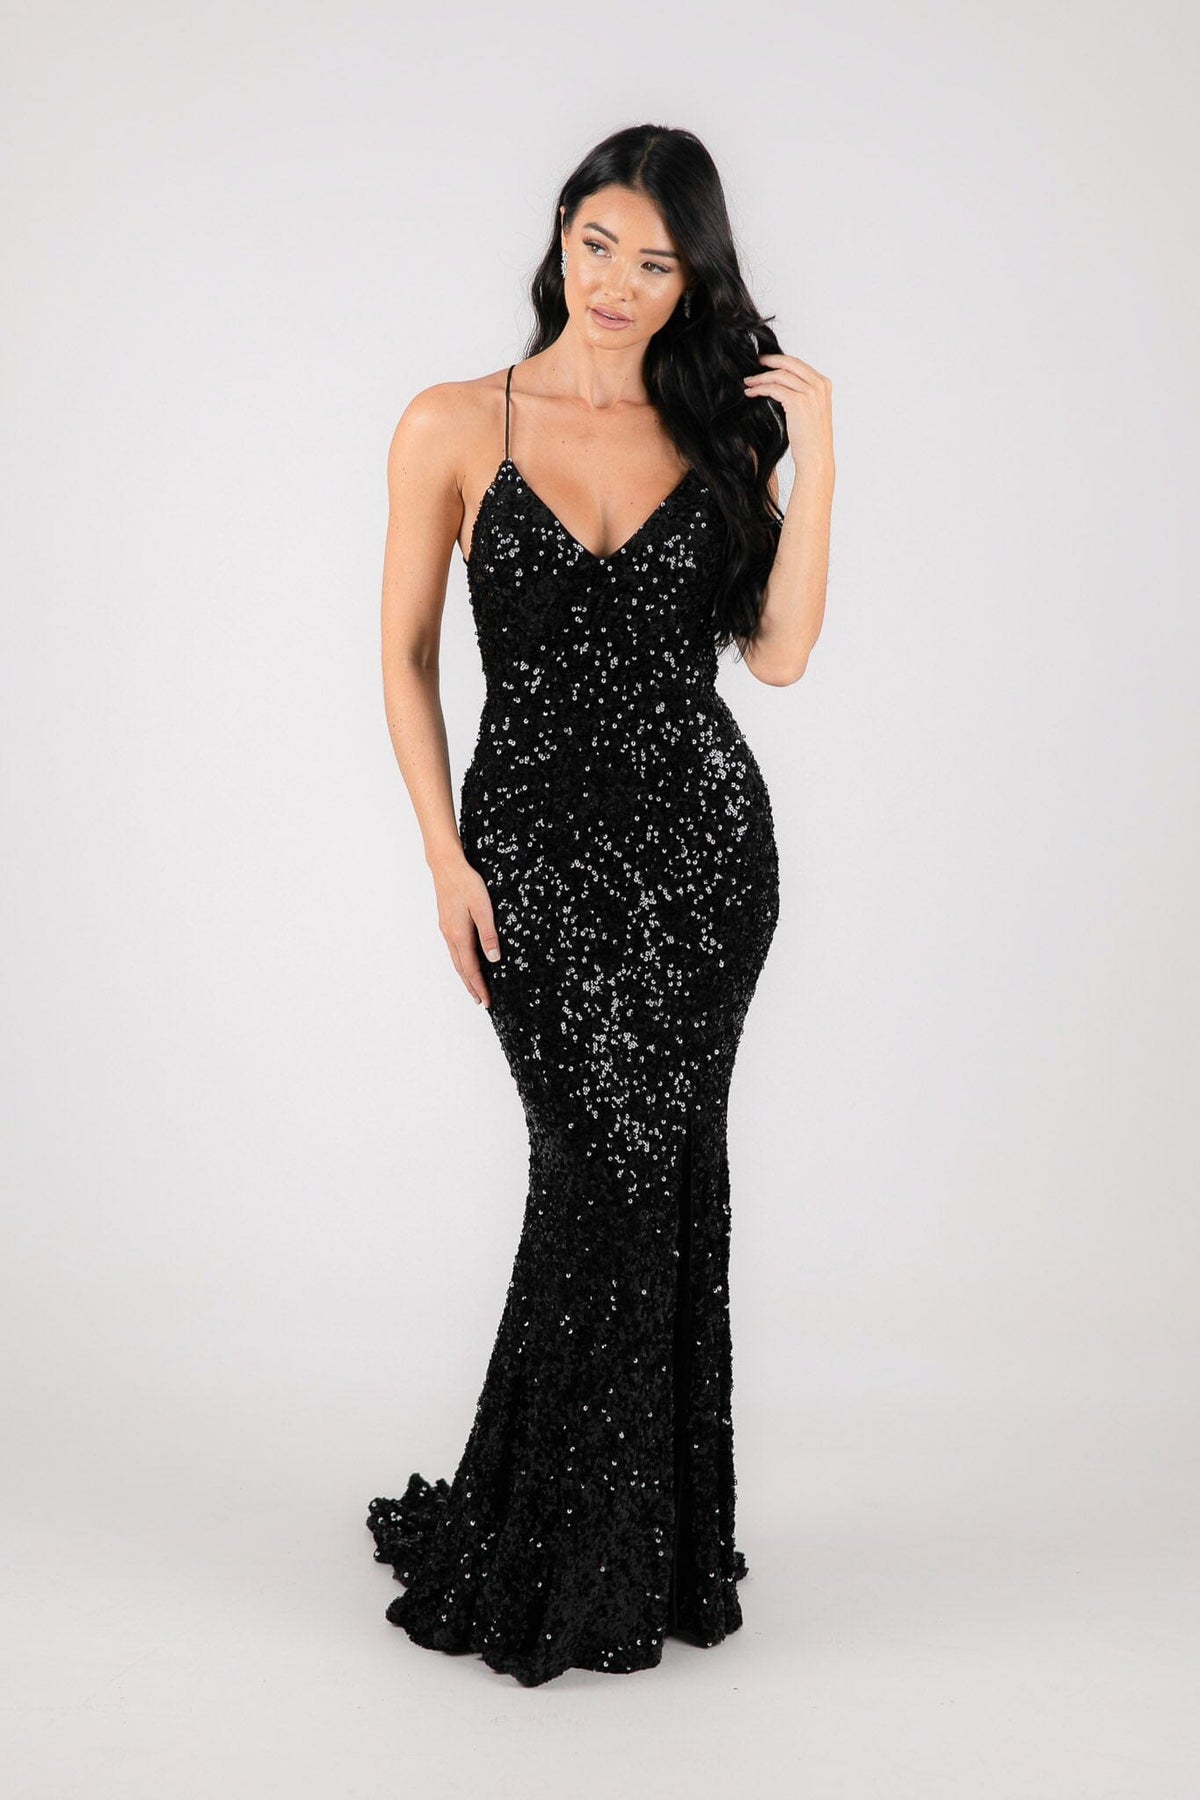 Black Velvet Sequin Full Length Formal Gown with V Neckline, Side Slit and Lace Up Open Back Design